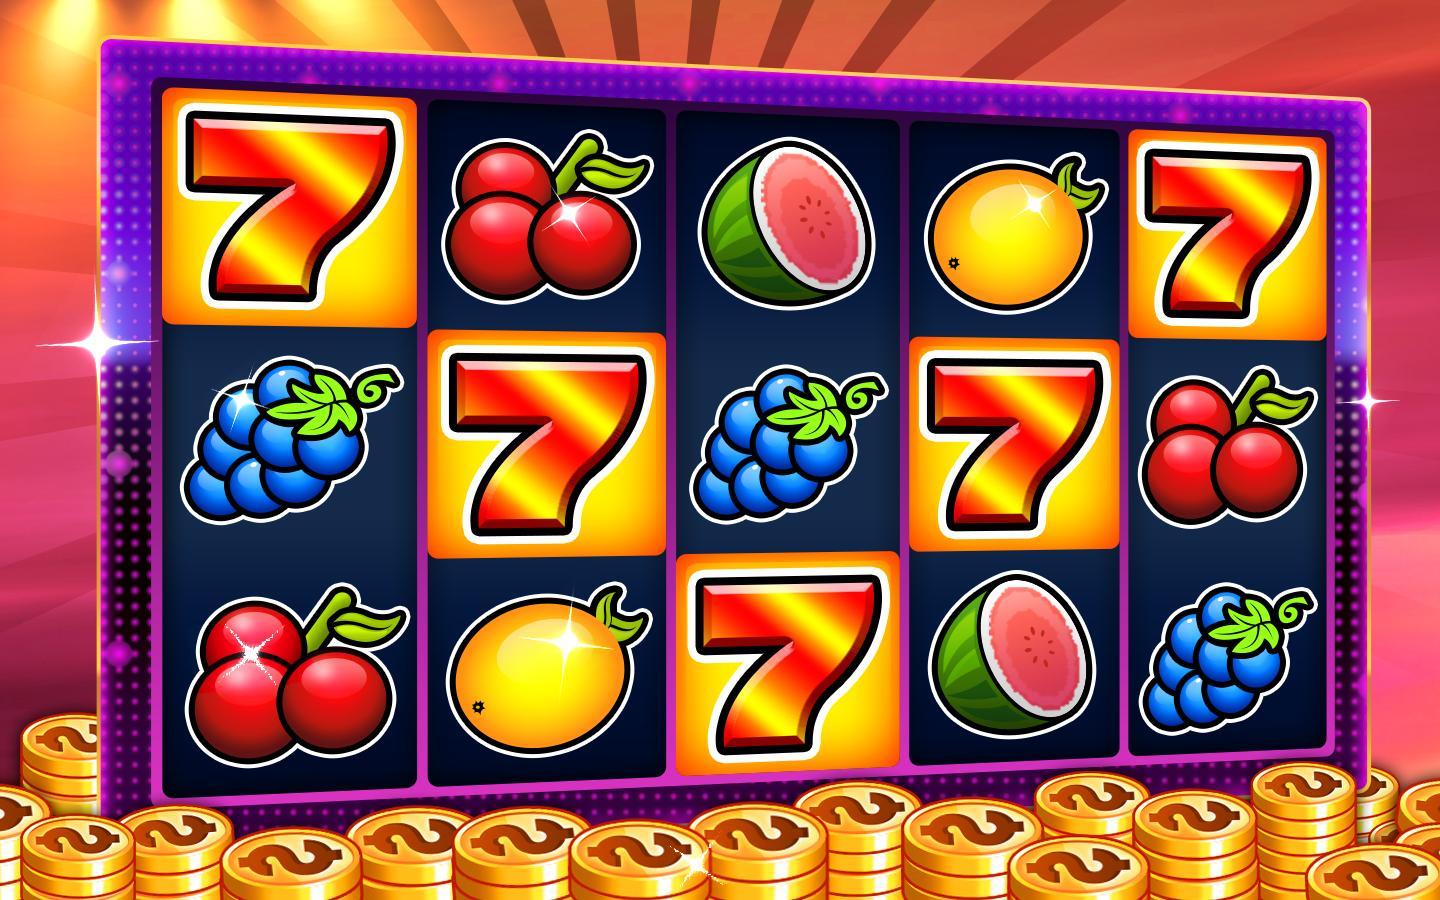 Slot machines - Casino slots 6.2 Screenshot 7